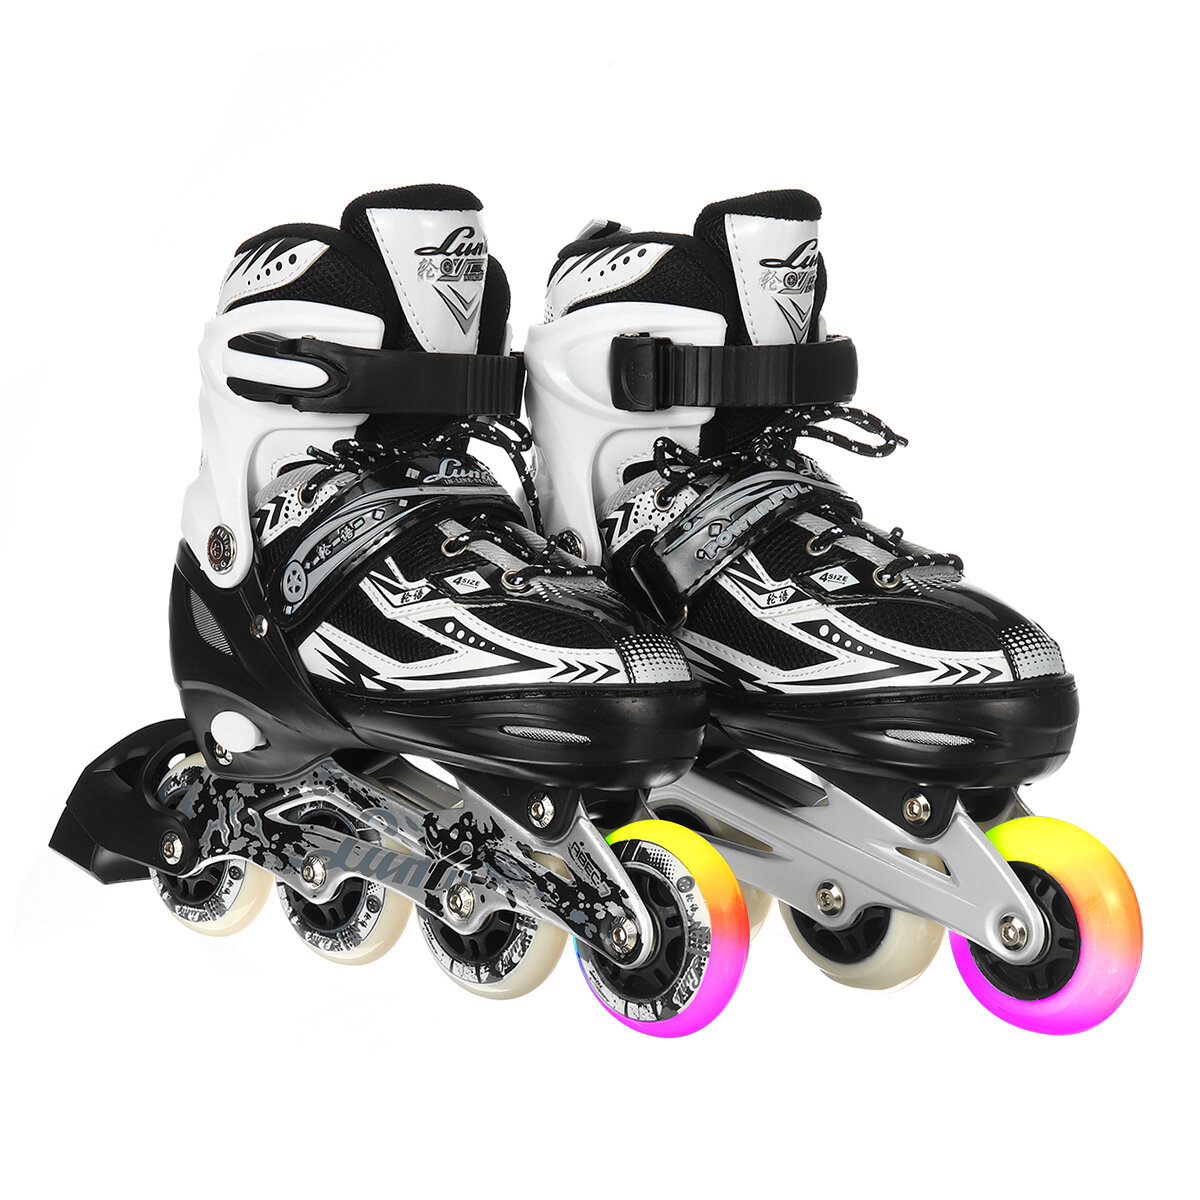 Light-up Inline Skates for Adults Kids, Beginner Roller Skates 4-Gear Adjustable Roller Blading Breathable Skate Shoes w